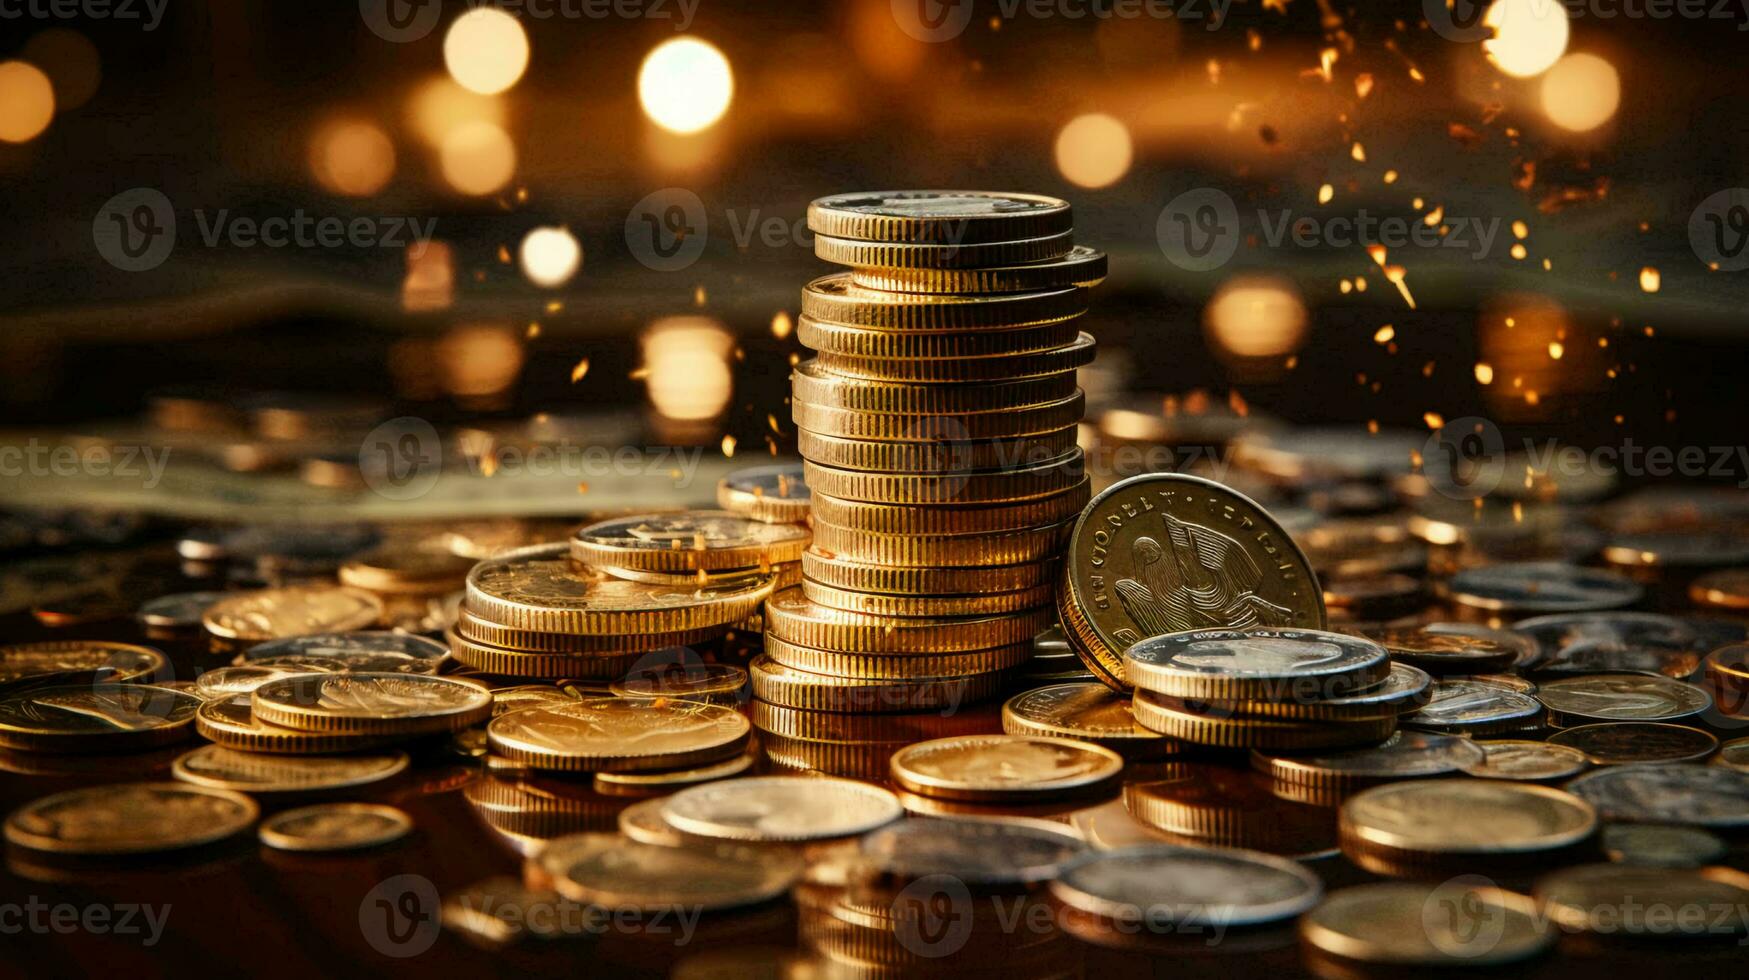 gerado por IA ouro moedas e dinheiro estão espalhados em a mesa. conceito do riqueza e salvando dinheiro foto